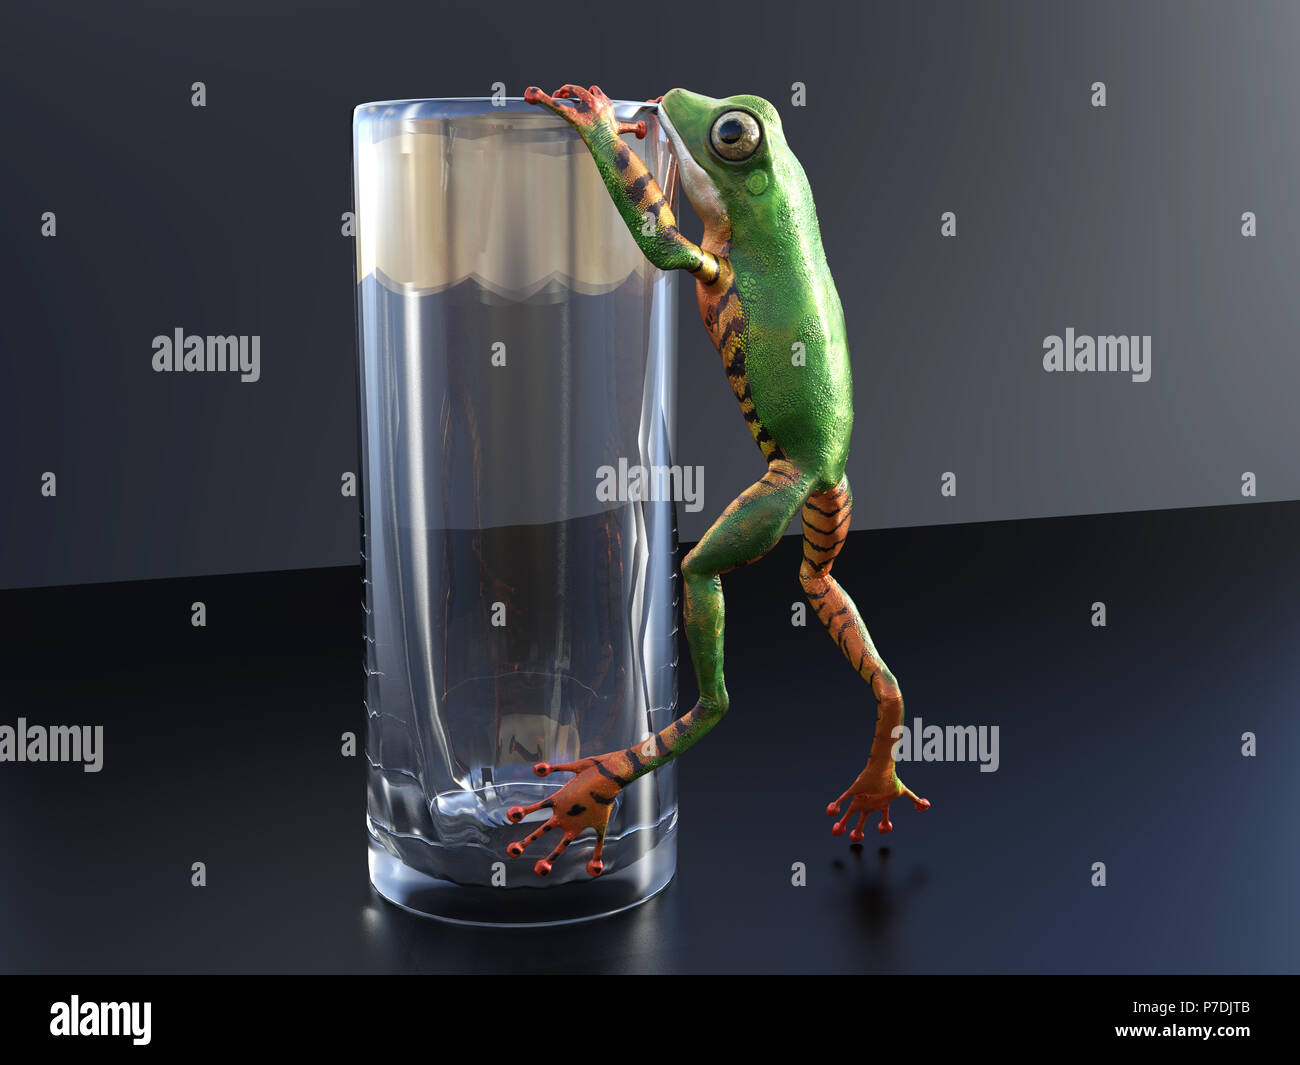 Rendu 3D réaliste d'une couleur orange et vert grenouille d'arbre escalade/accroché à un verre vide. Banque D'Images